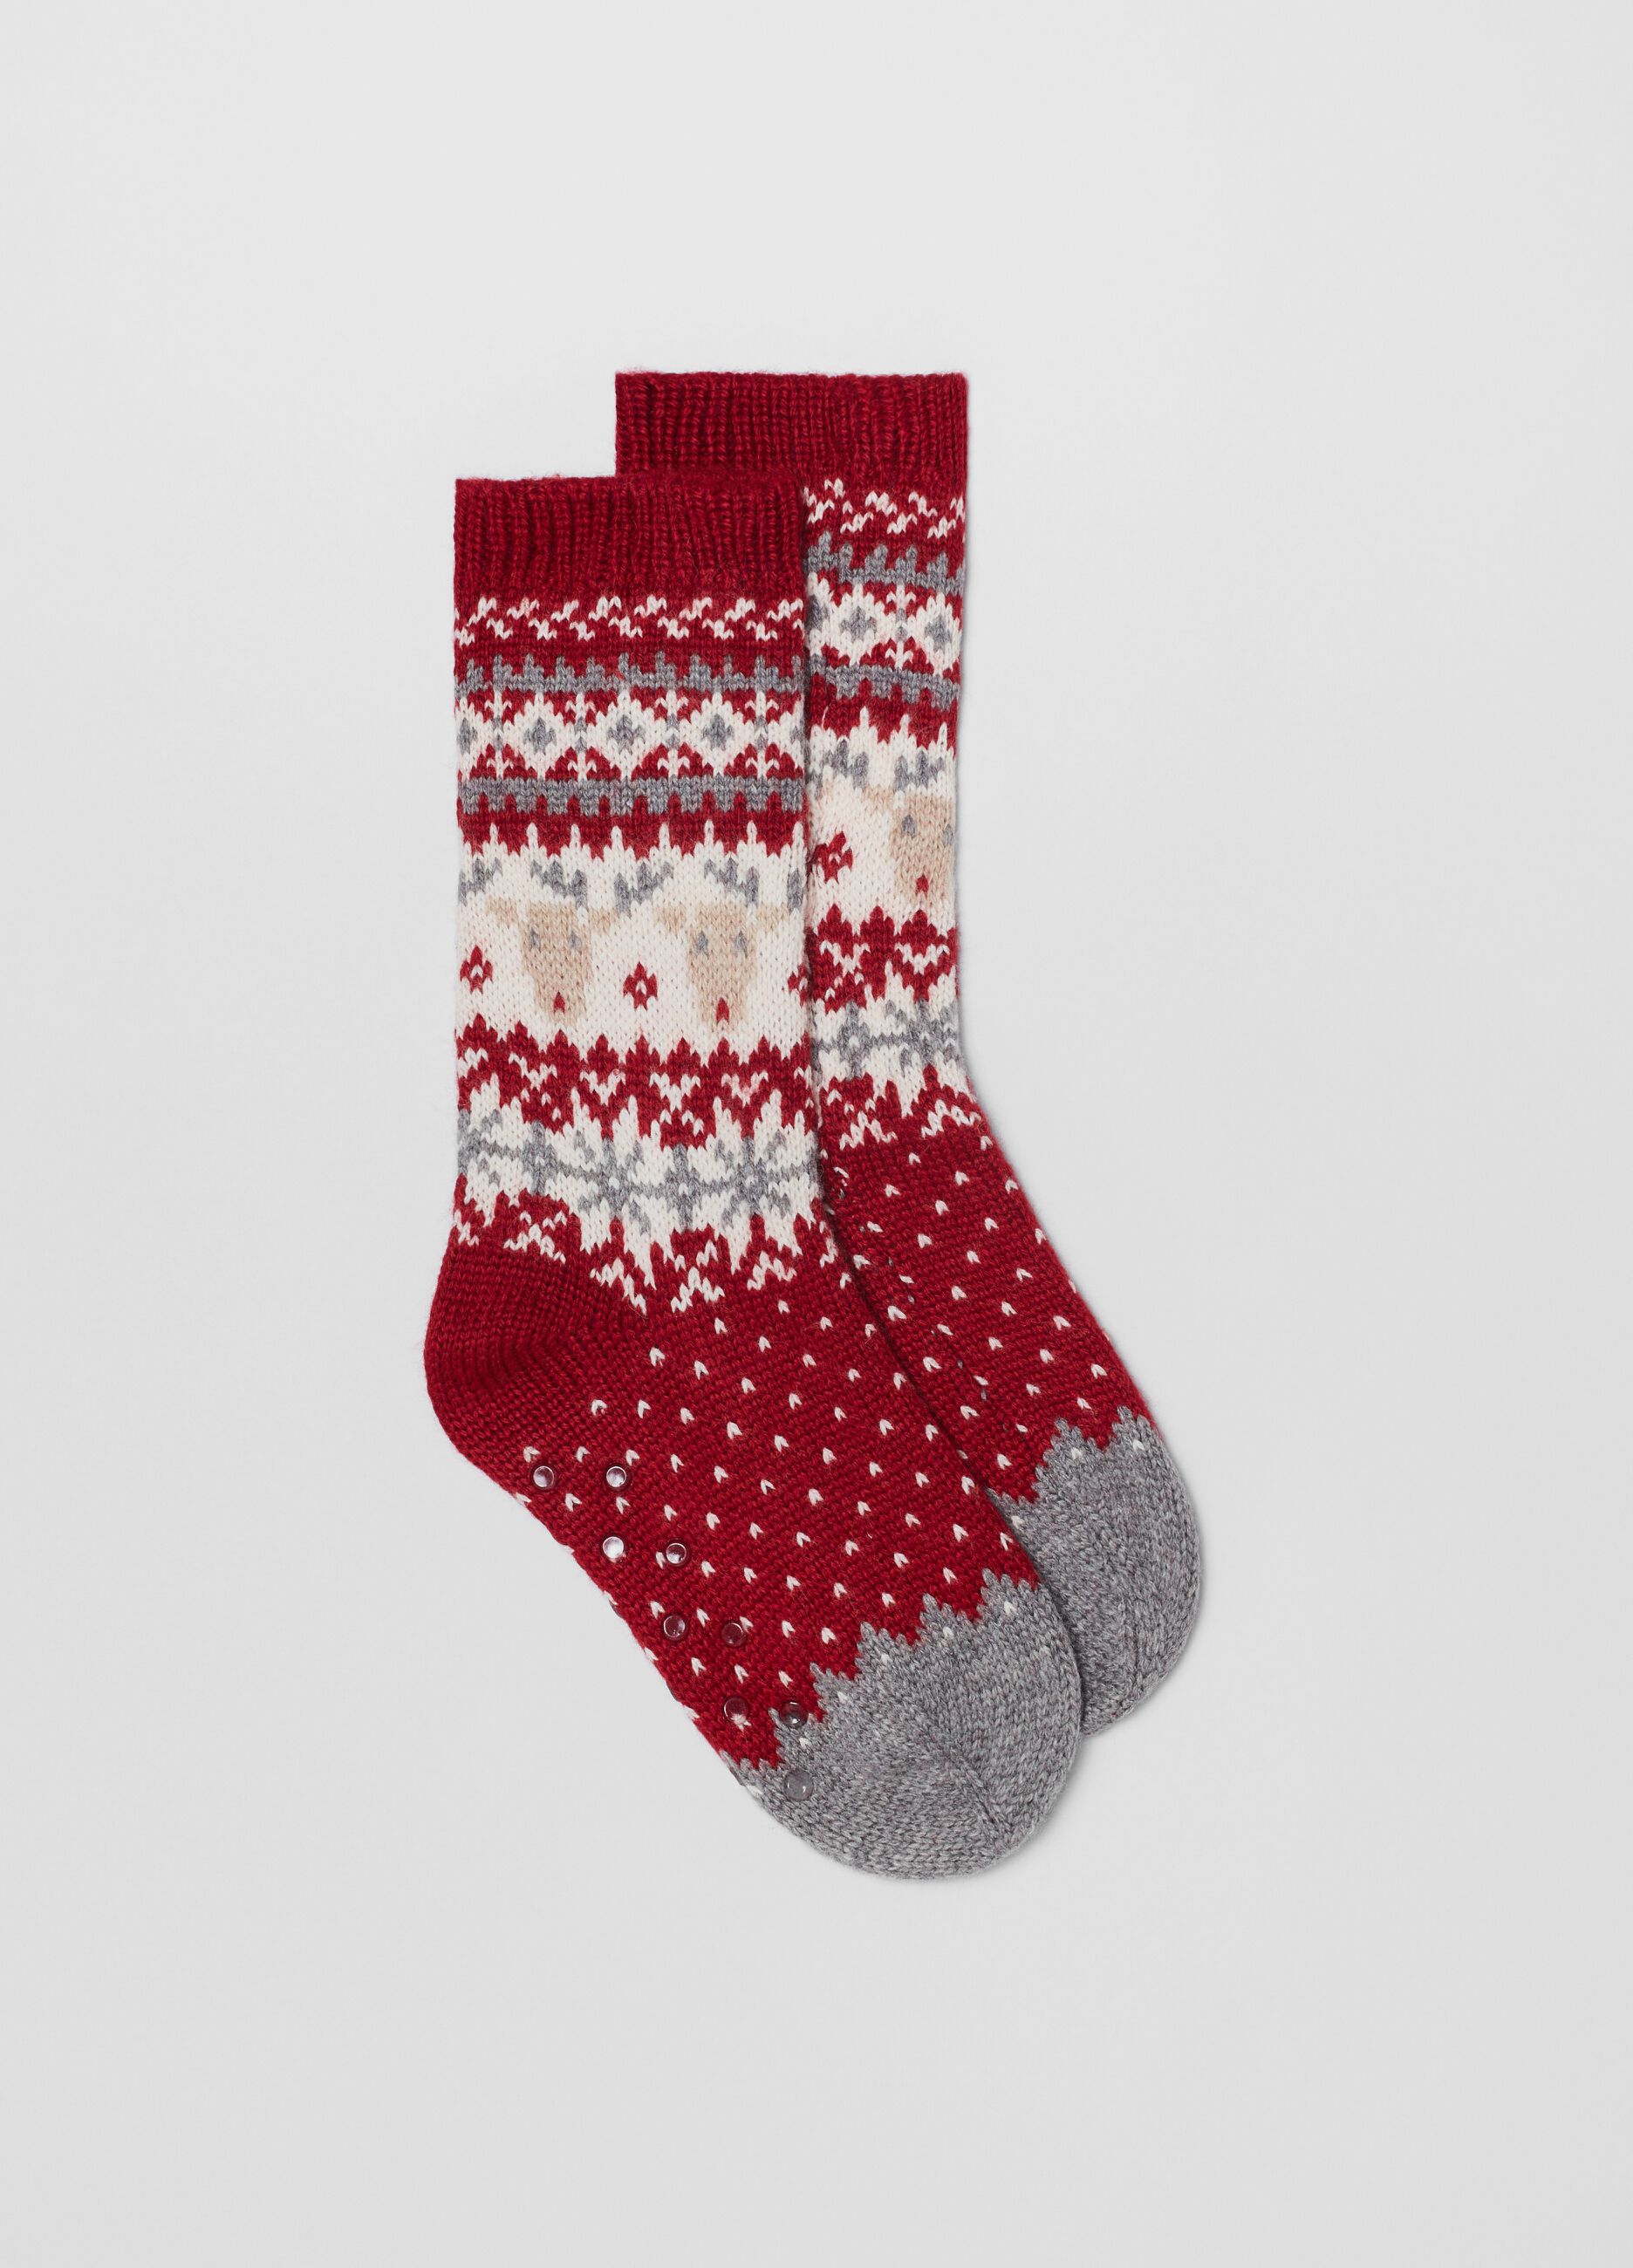 Slipper socks with Norwegian motif